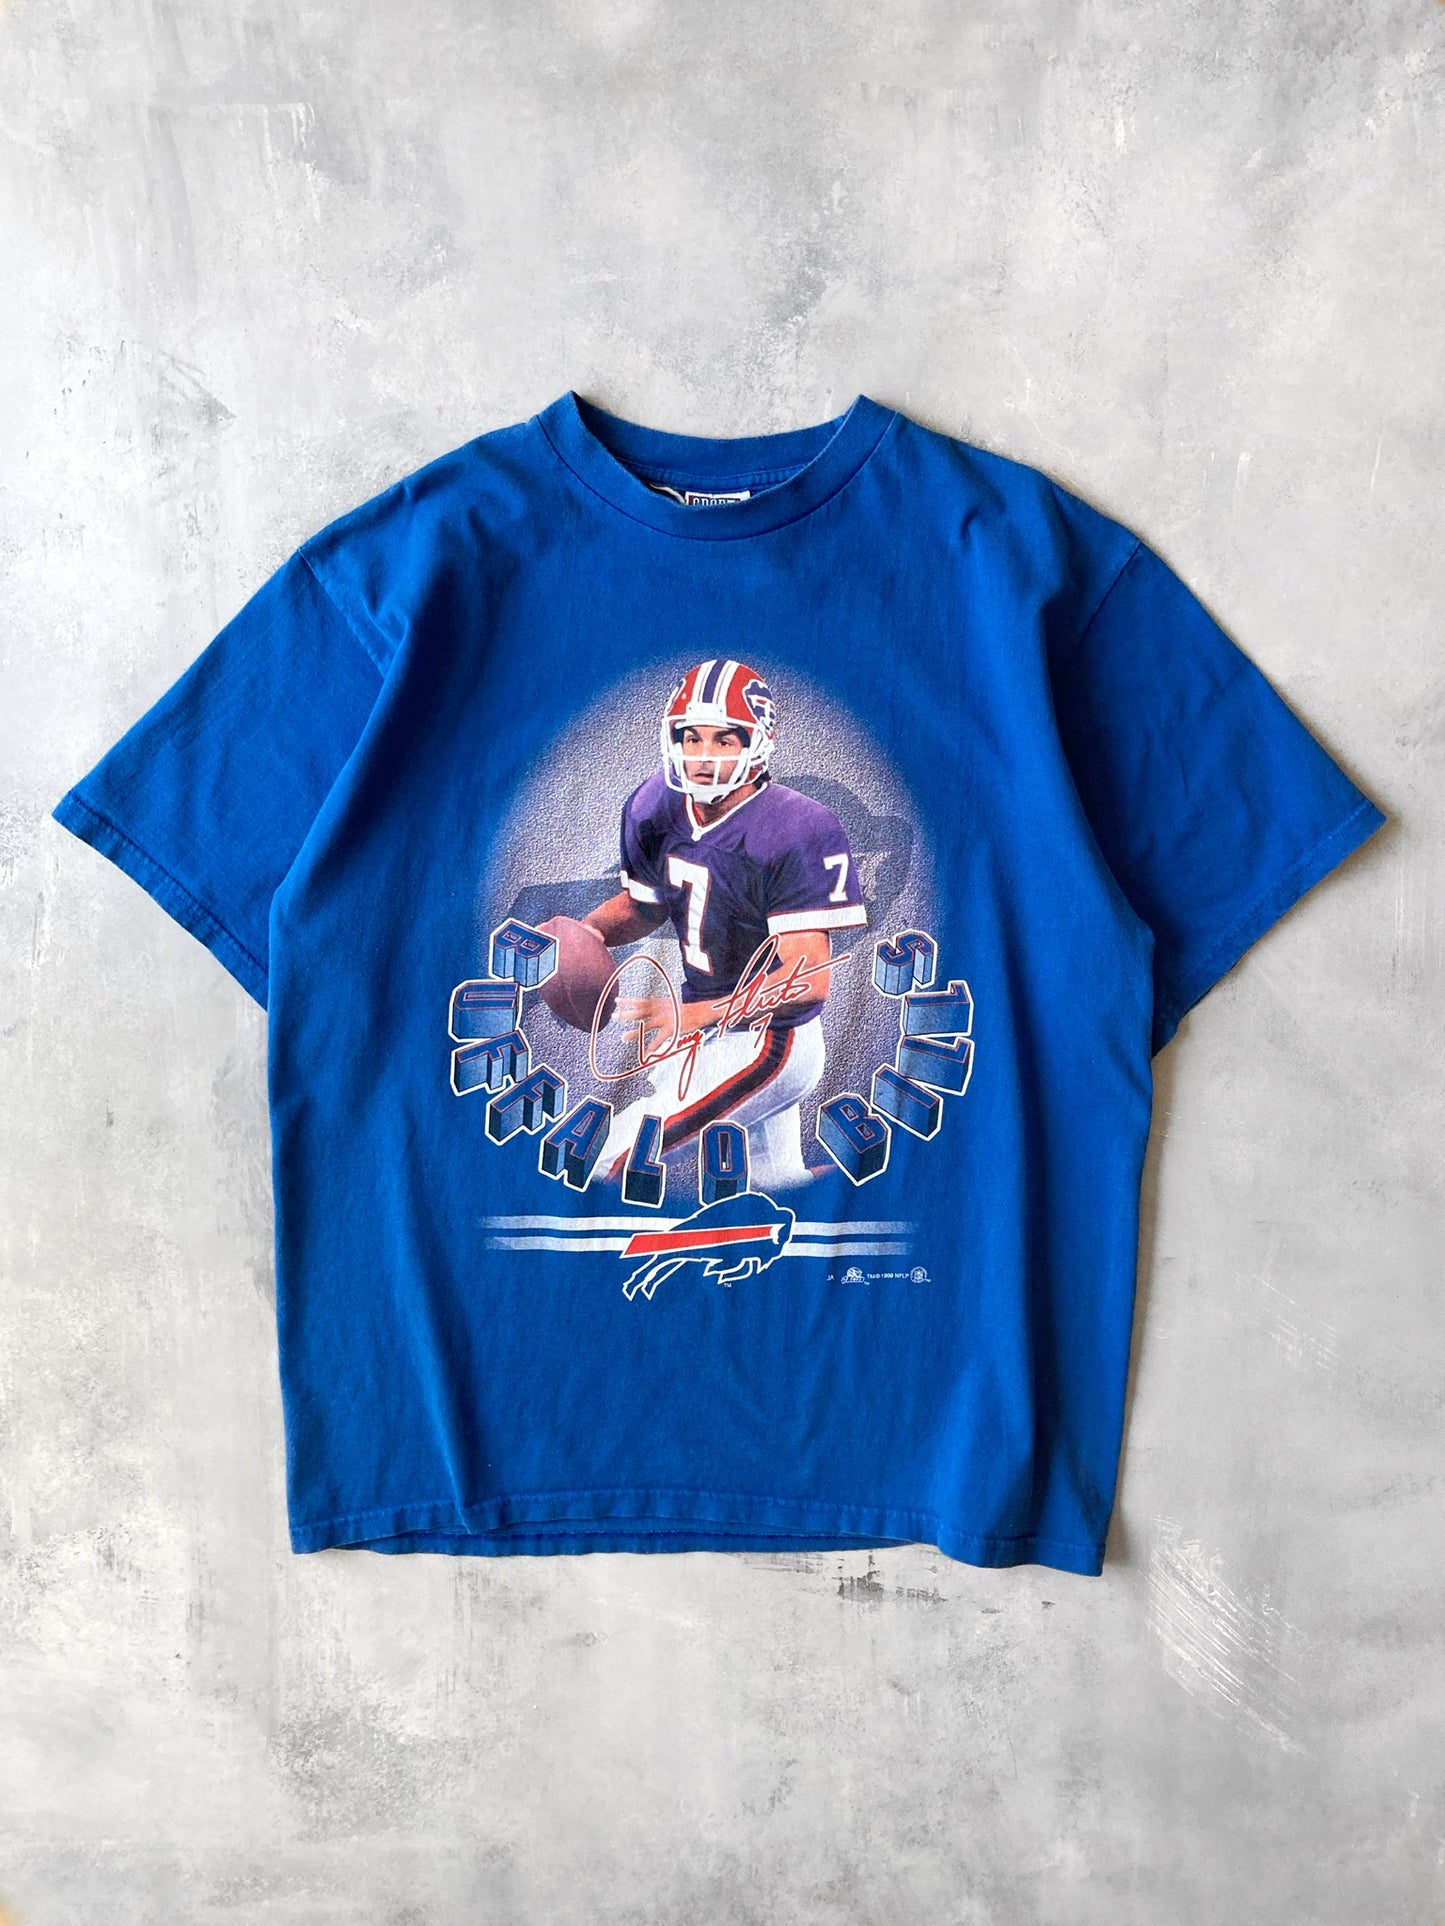 Doug Flutie T-Shirt '99 - XL